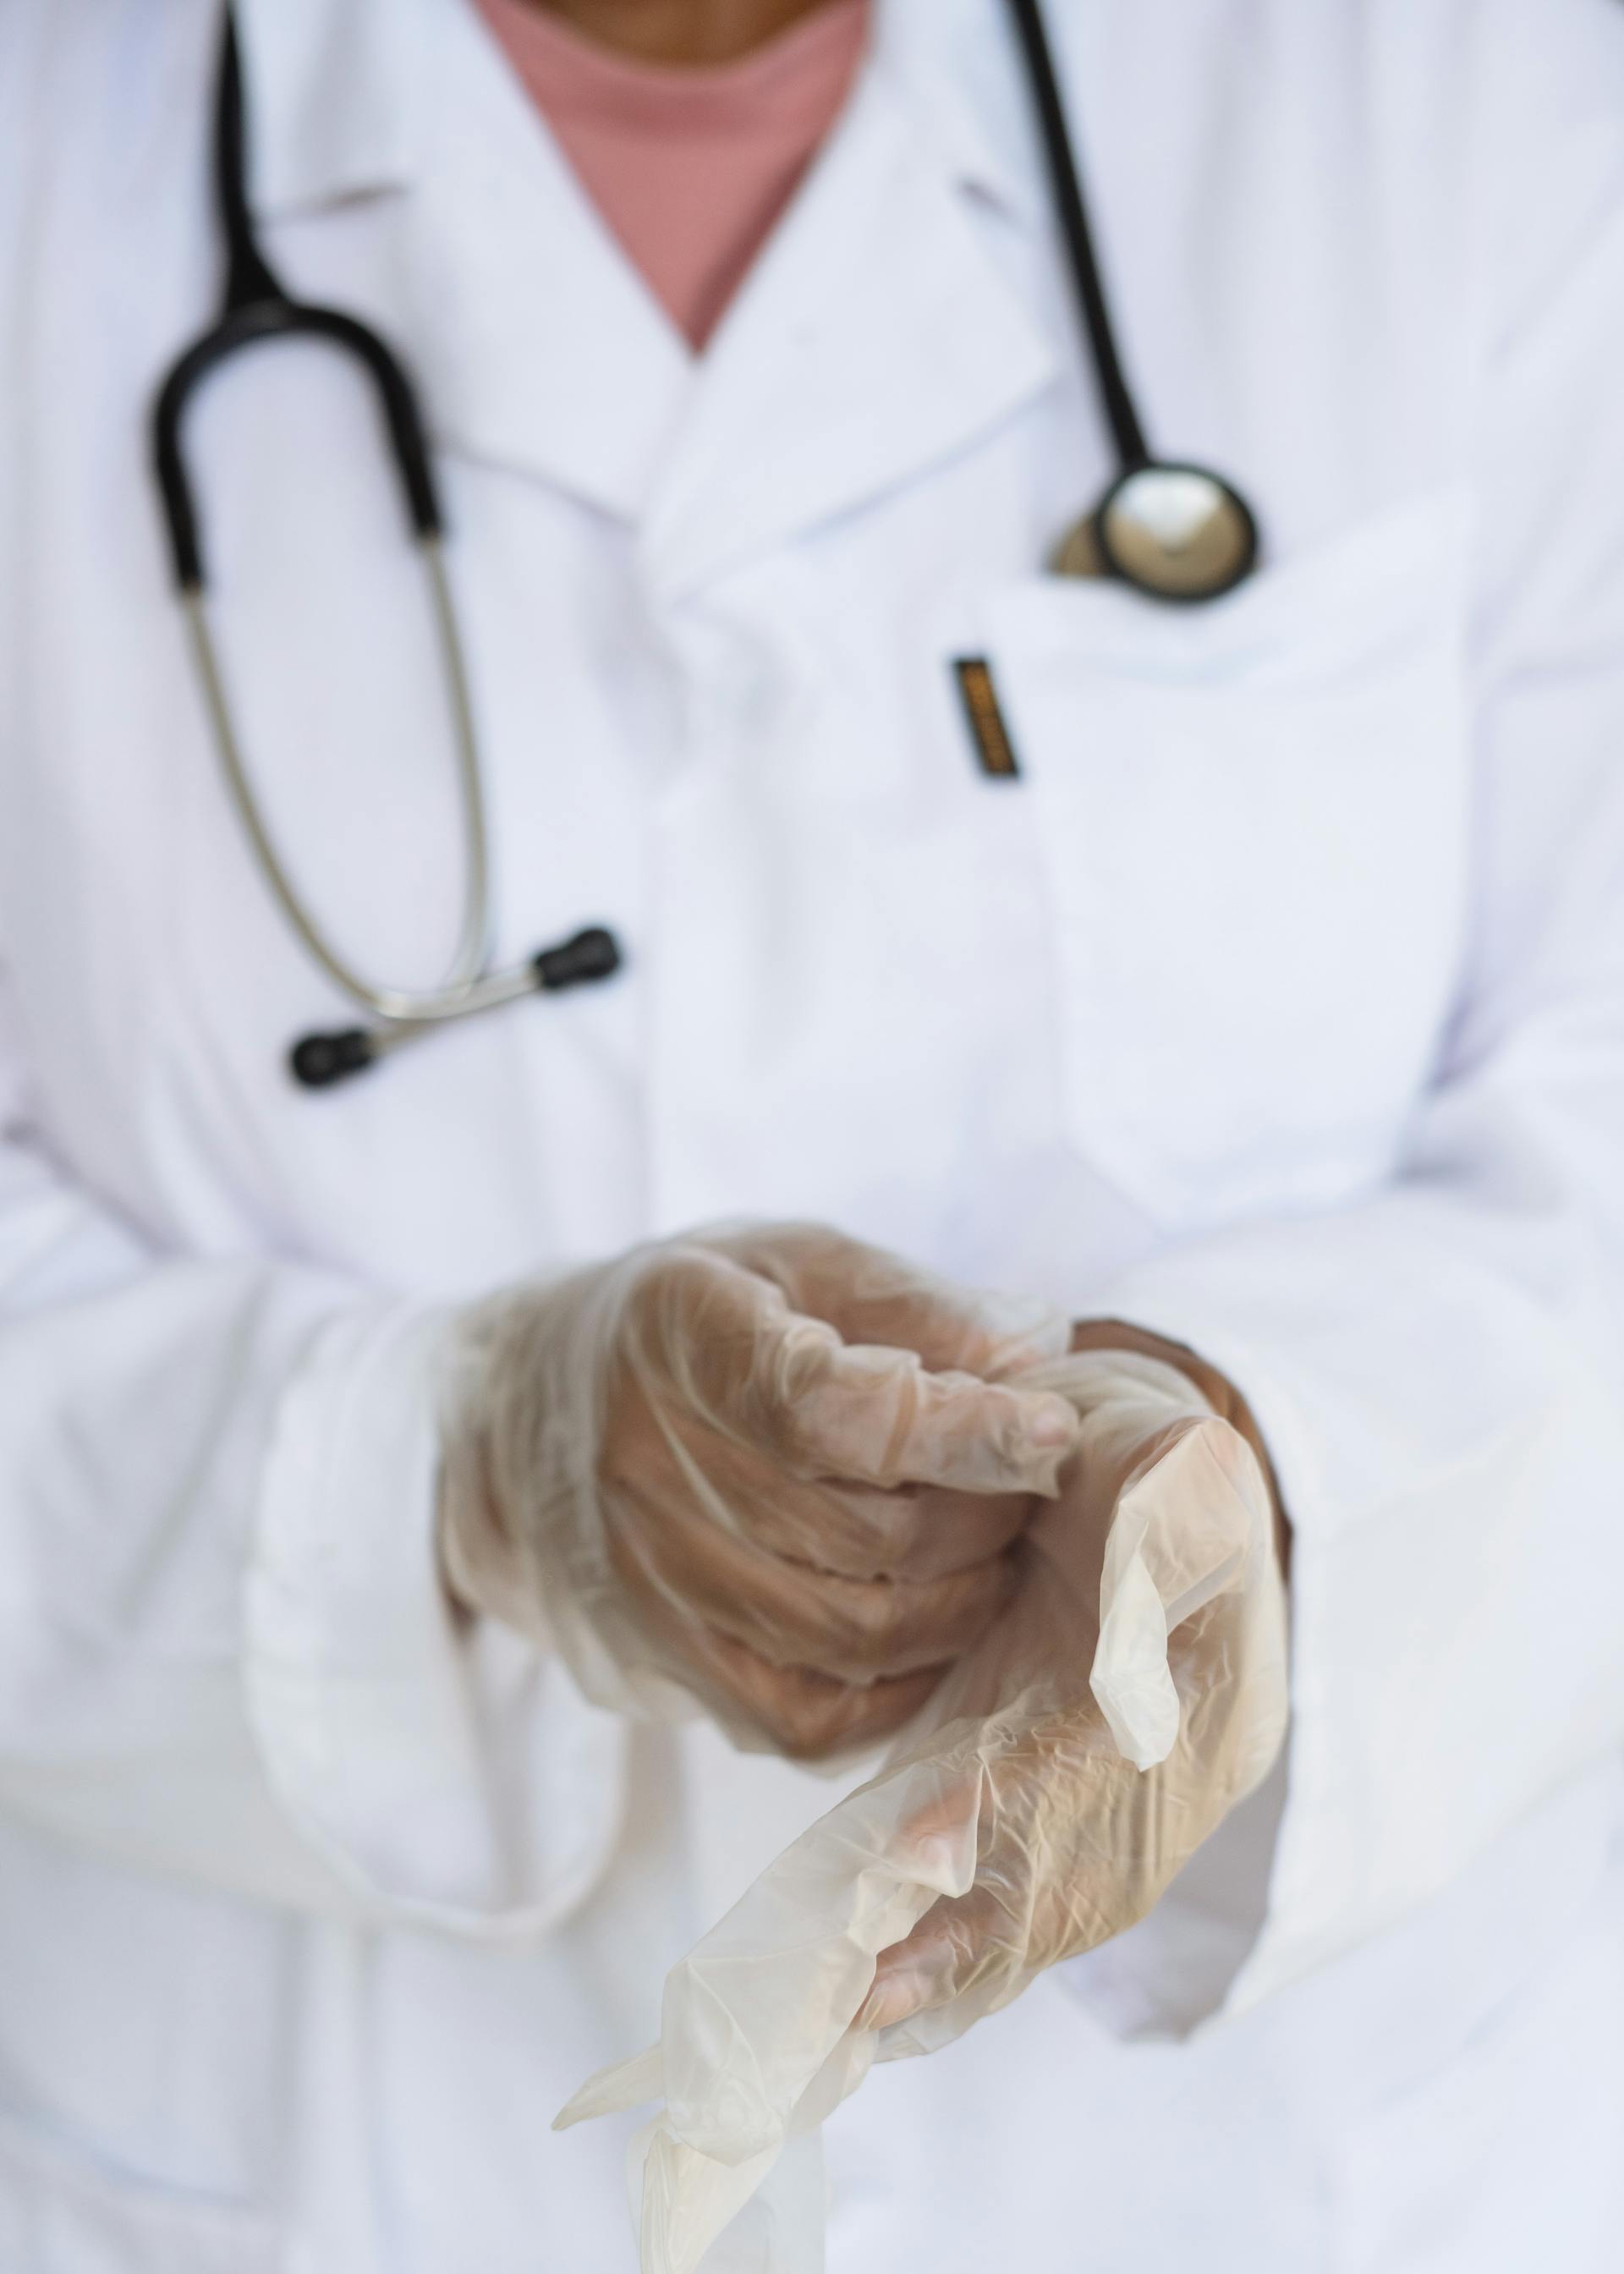 Un médico poniéndose guantes | Fuente: Pexels